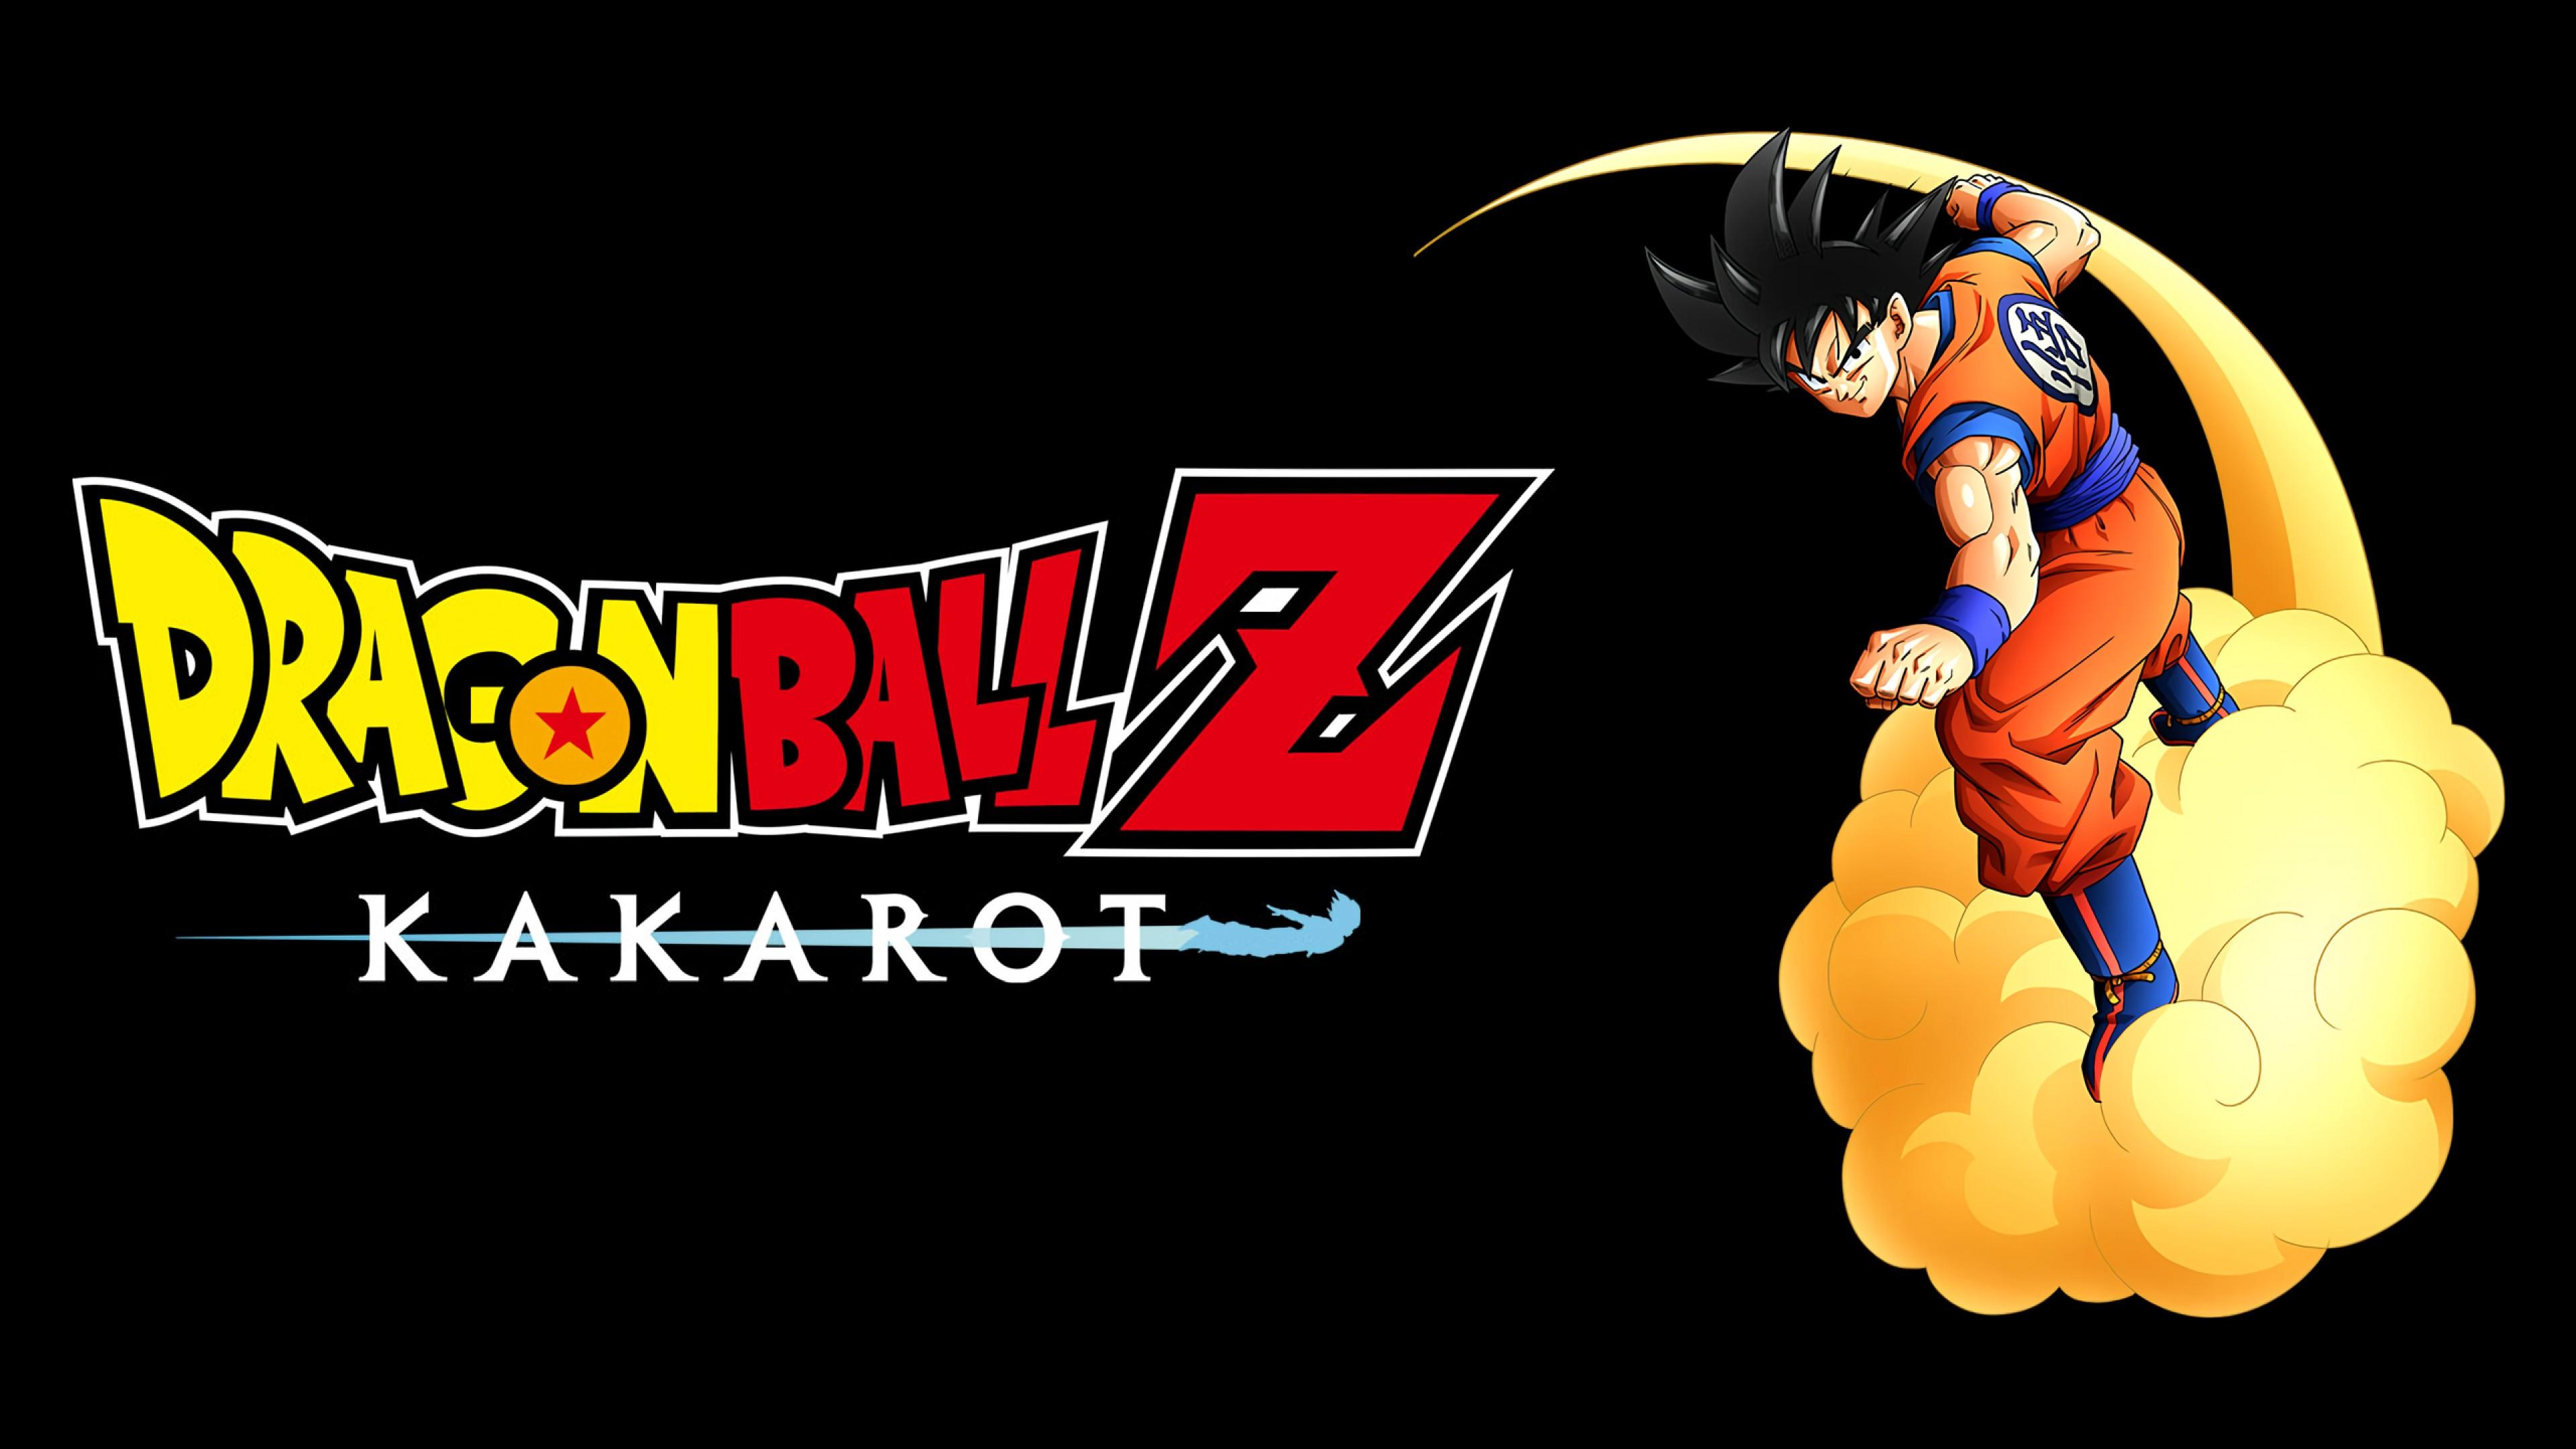 3840 x 2160 · jpeg - Dragon Ball Z: Kakarot 3840x2160 (Ultra HD 4K) - Wallpaper - Fonds d ...